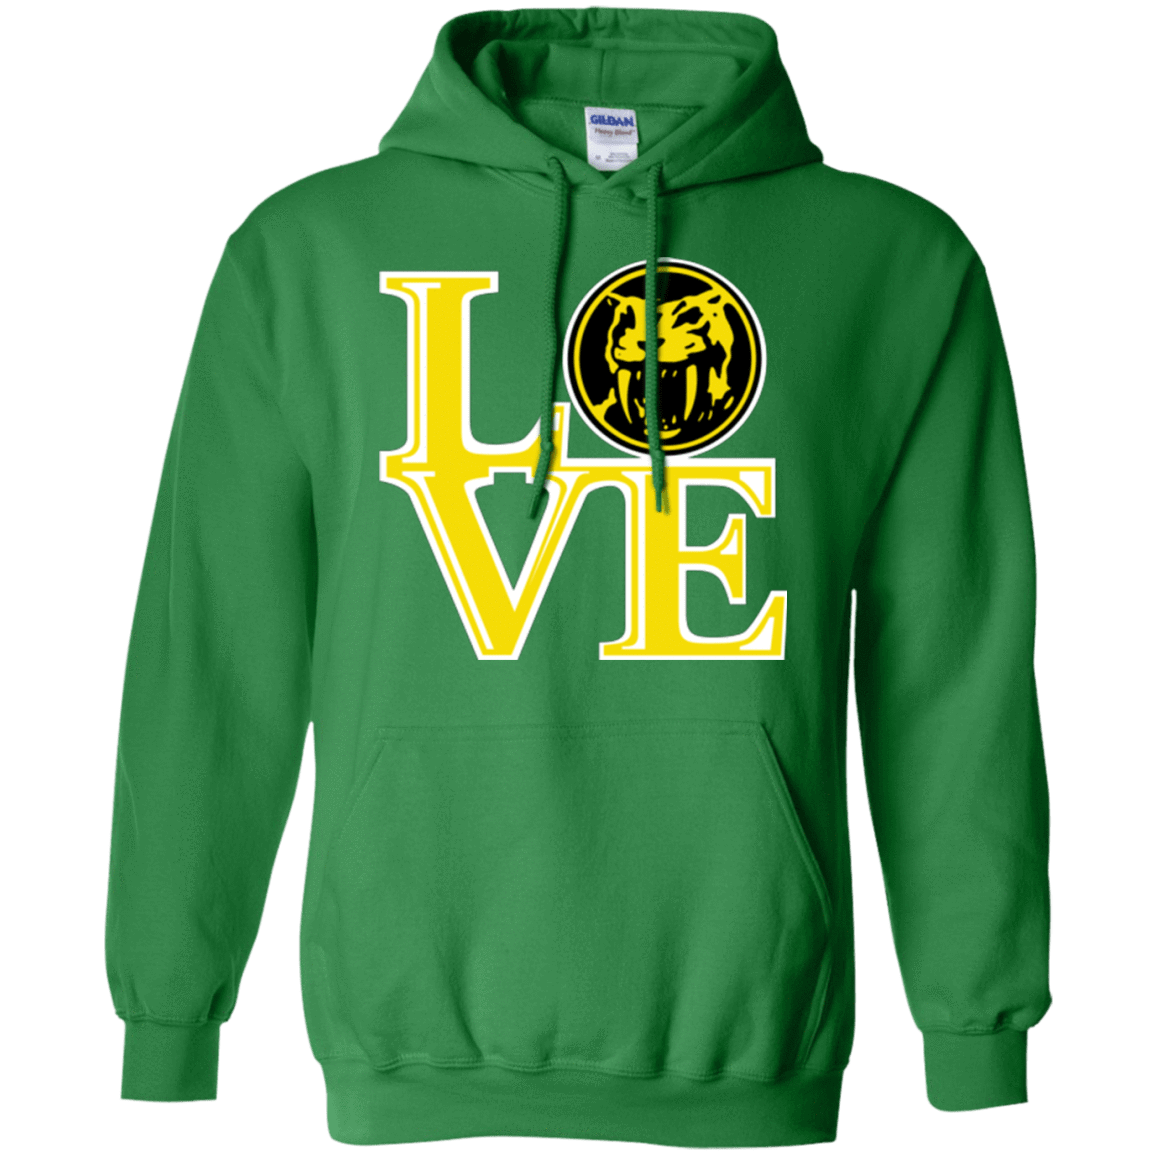 Sweatshirts Irish Green / Small Yellow Ranger LOVE Pullover Hoodie